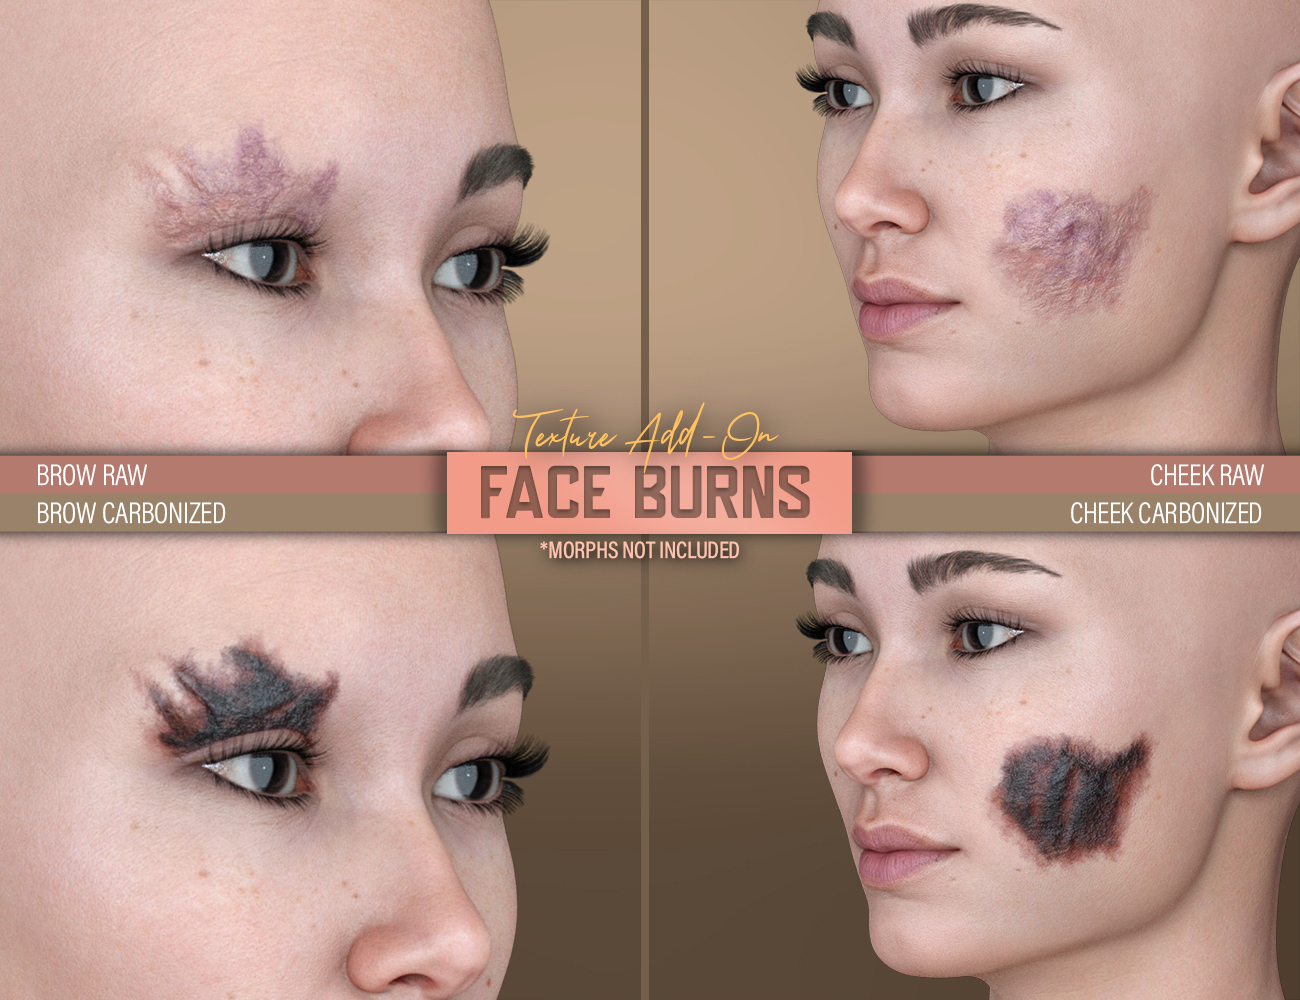 HD Face Burns AddOn for Genesis 8 Females by: FenixPhoenixEsid, 3D Models by Daz 3D